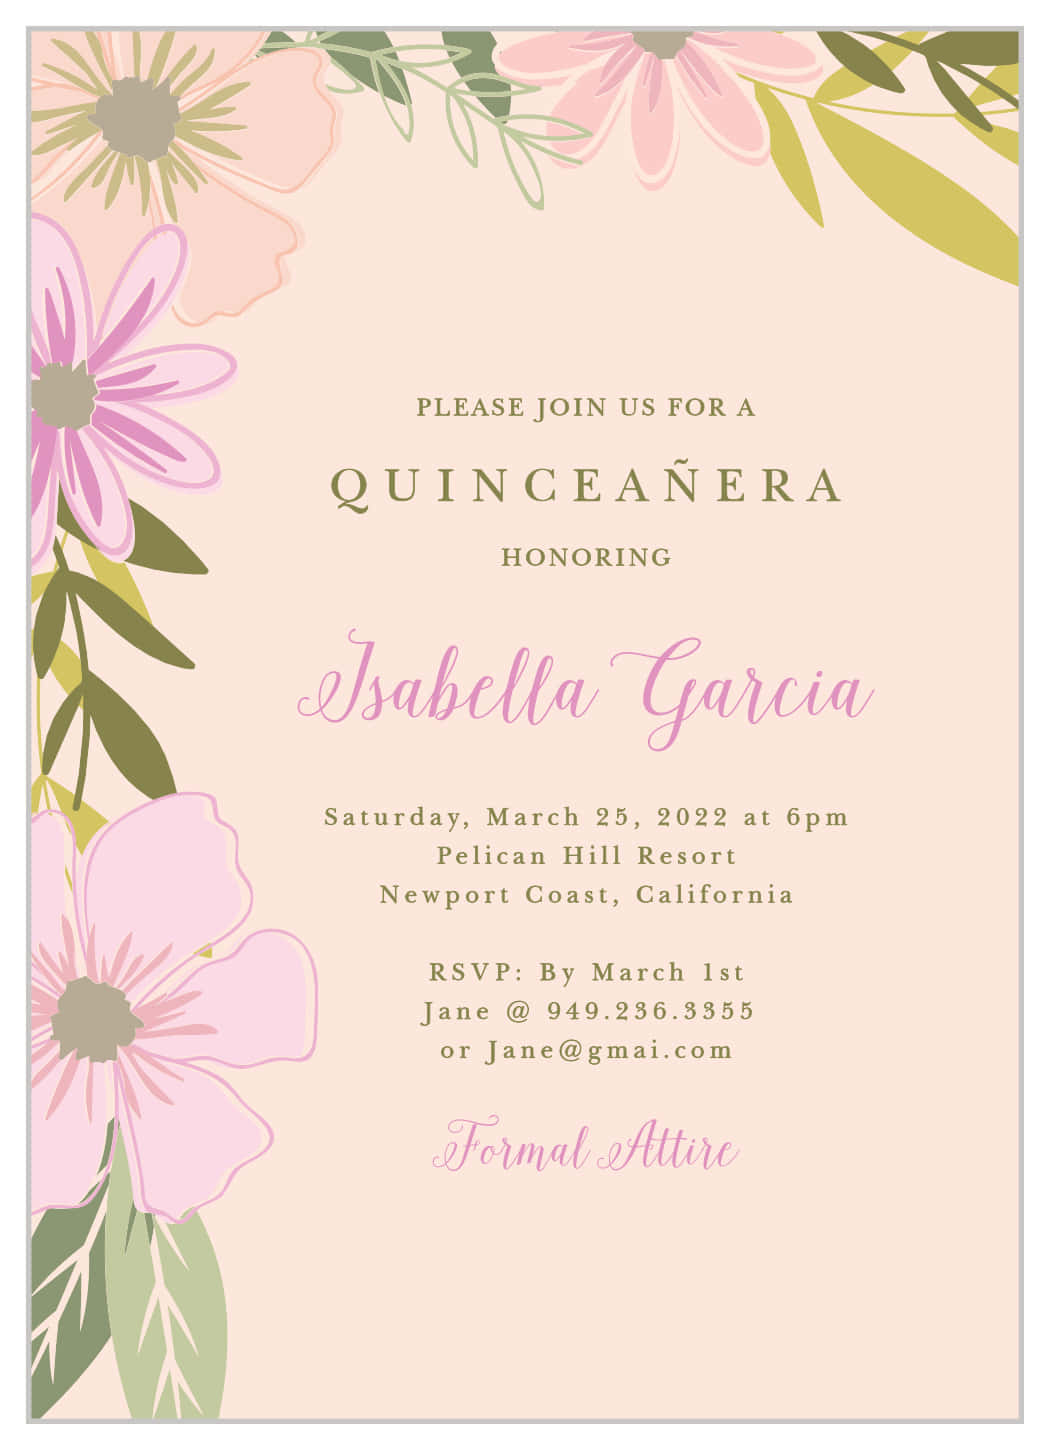 Invitiper La Quinceañera Con Fiori Rosa